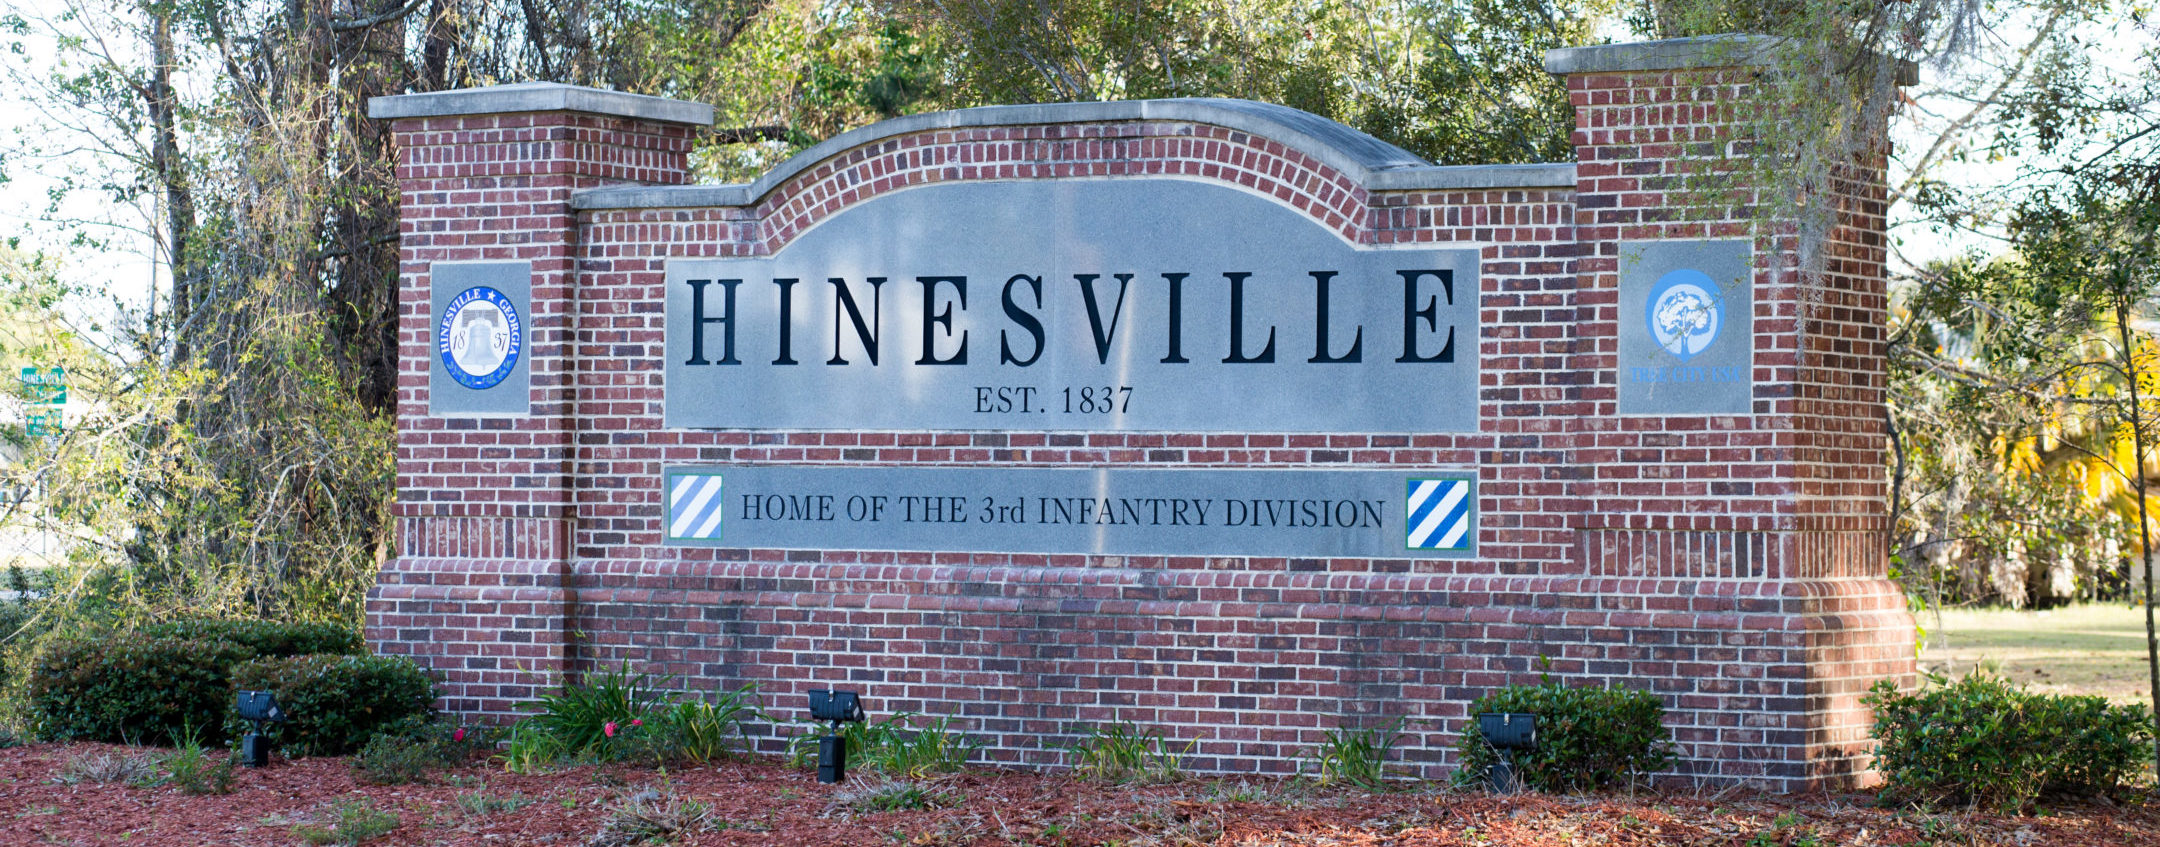 Hinesville, Fort Stewart, GA - gomillie.com